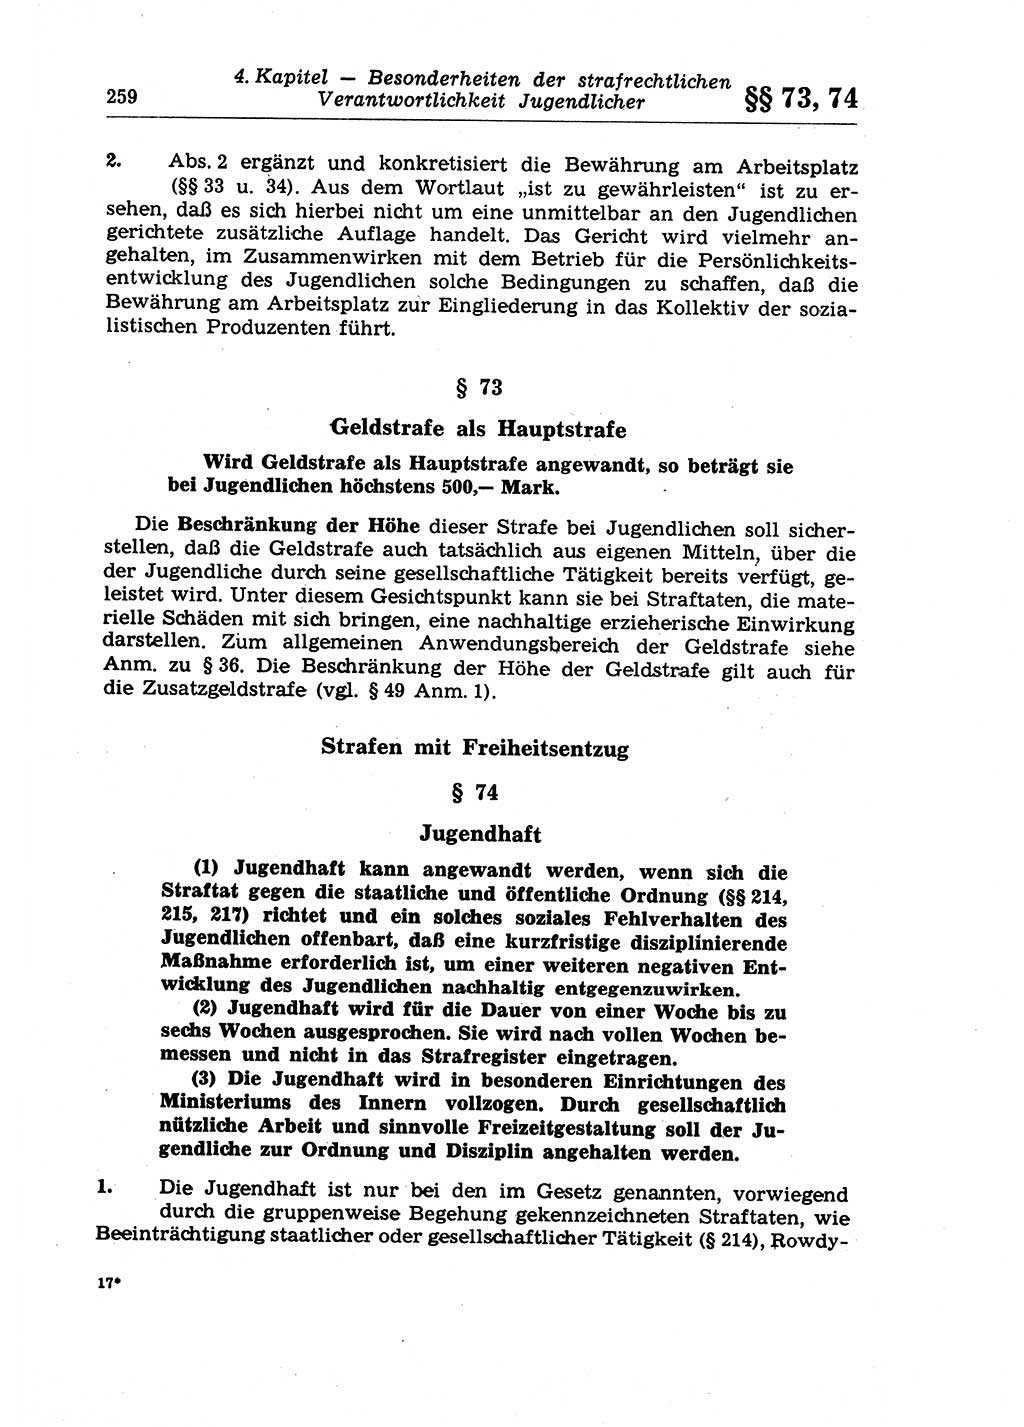 Strafrecht der Deutschen Demokratischen Republik (DDR), Lehrkommentar zum Strafgesetzbuch (StGB), Allgemeiner Teil 1970, Seite 259 (Strafr. DDR Lehrkomm. StGB AT 1970, S. 259)